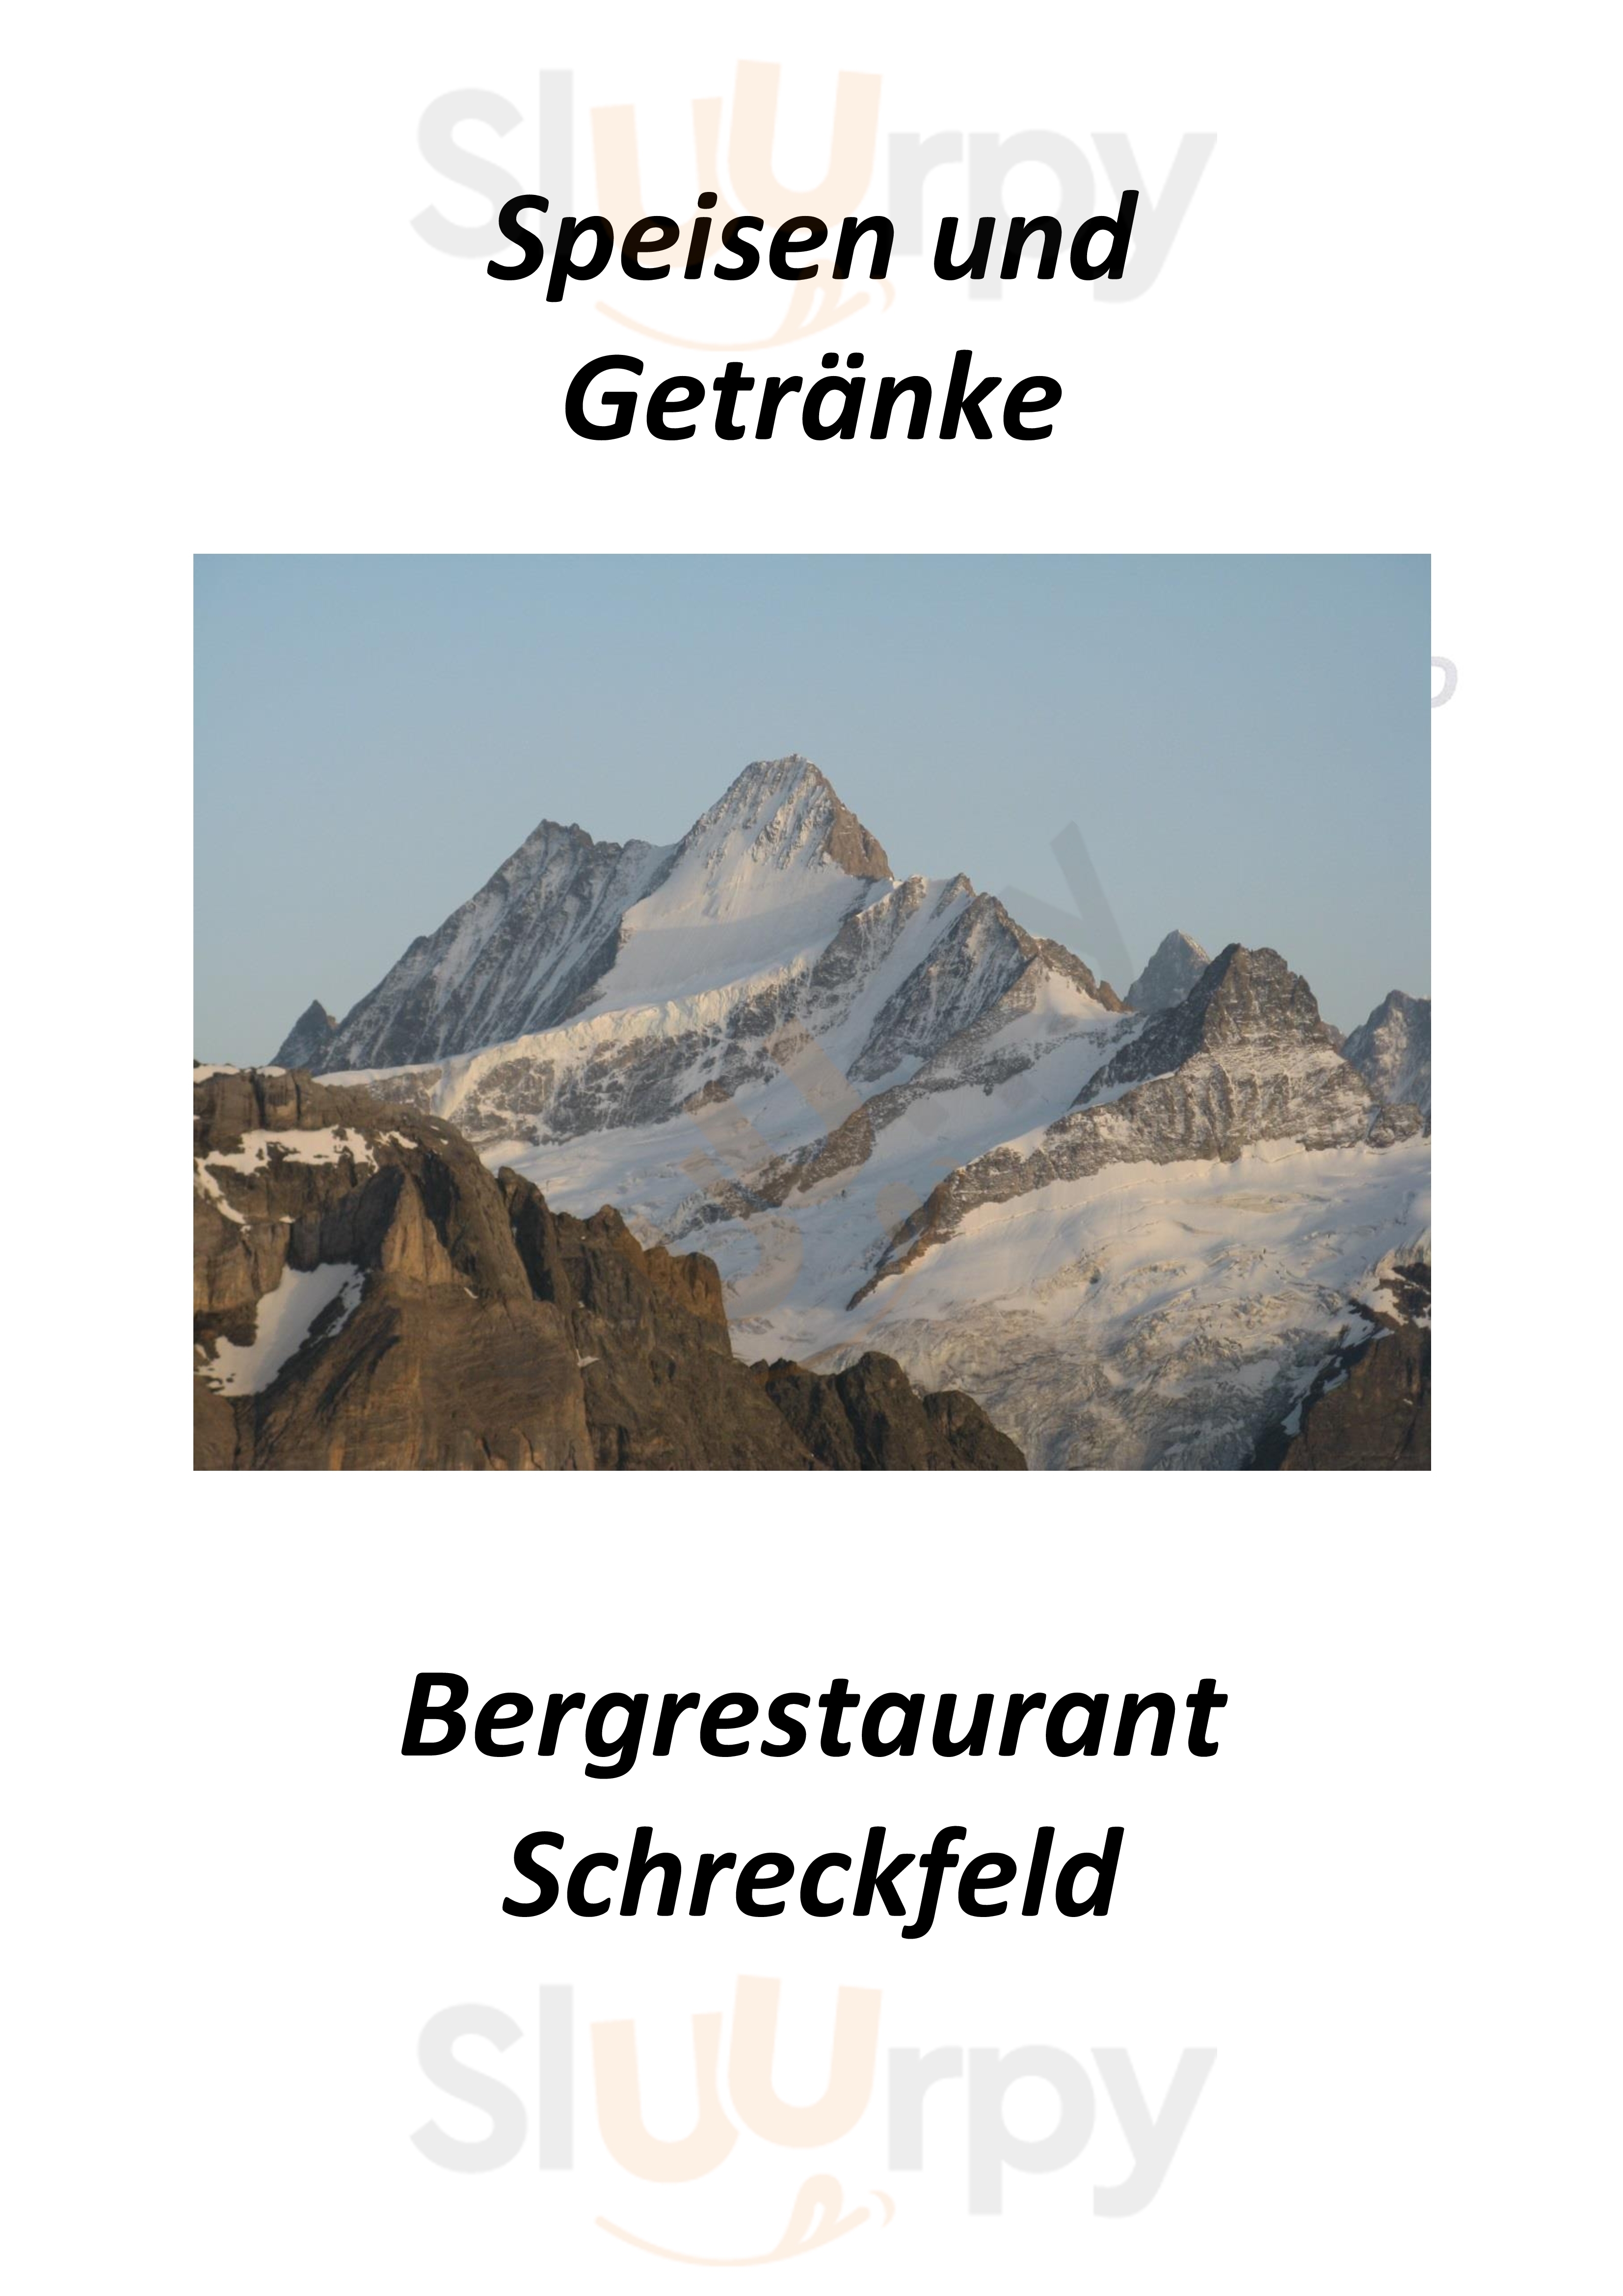 Bergrestaurant Schreckfeld Grindelwald Menu - 1